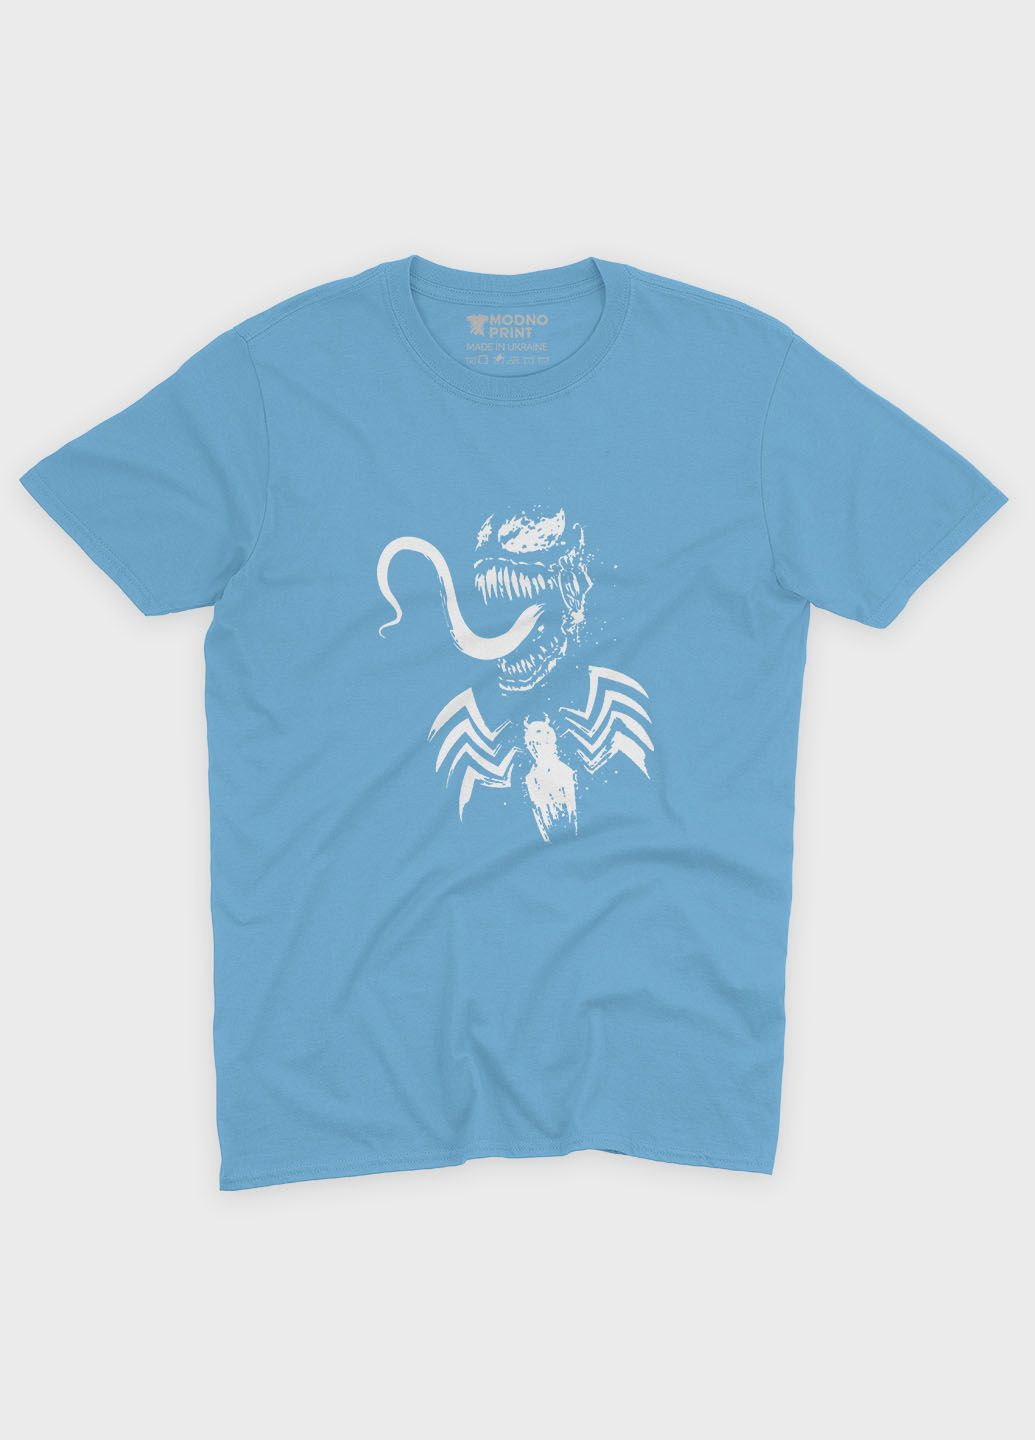 Голубая демисезонная футболка для мальчика с принтом супервора - веном (ts001-1-lbl-006-013-010-b) Modno